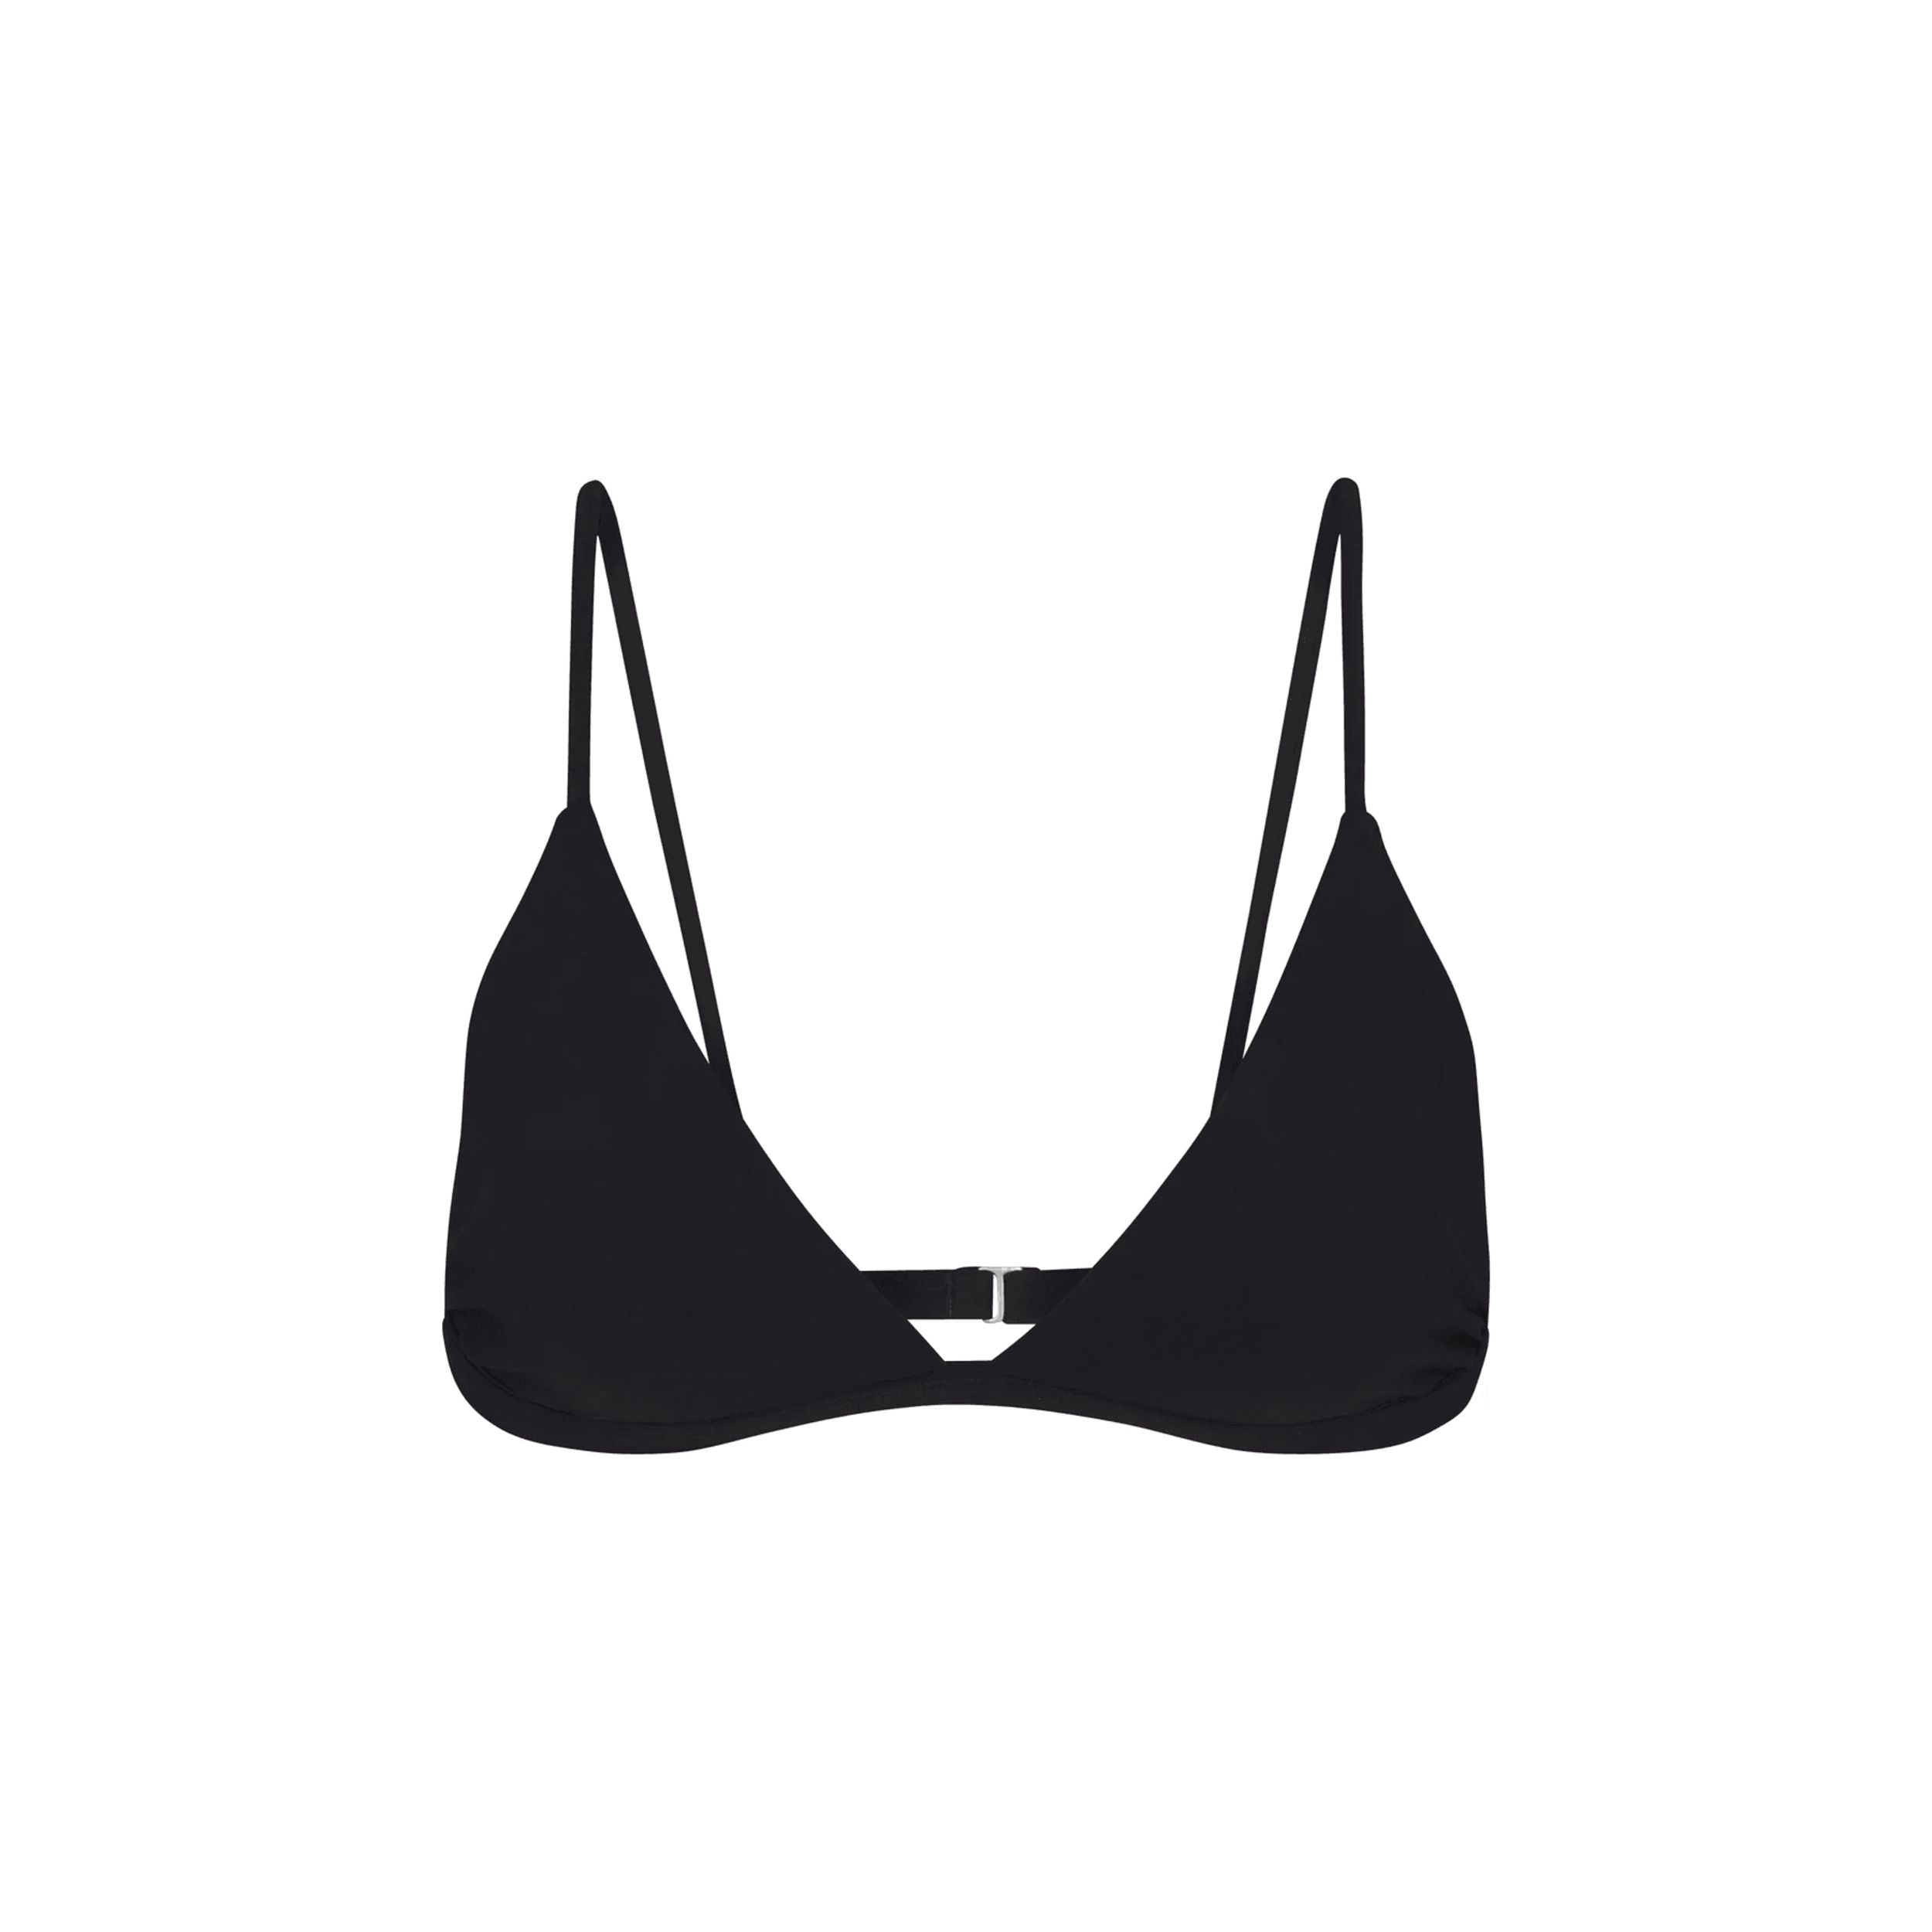 Anemos - The Classic Triangle Bikini Top